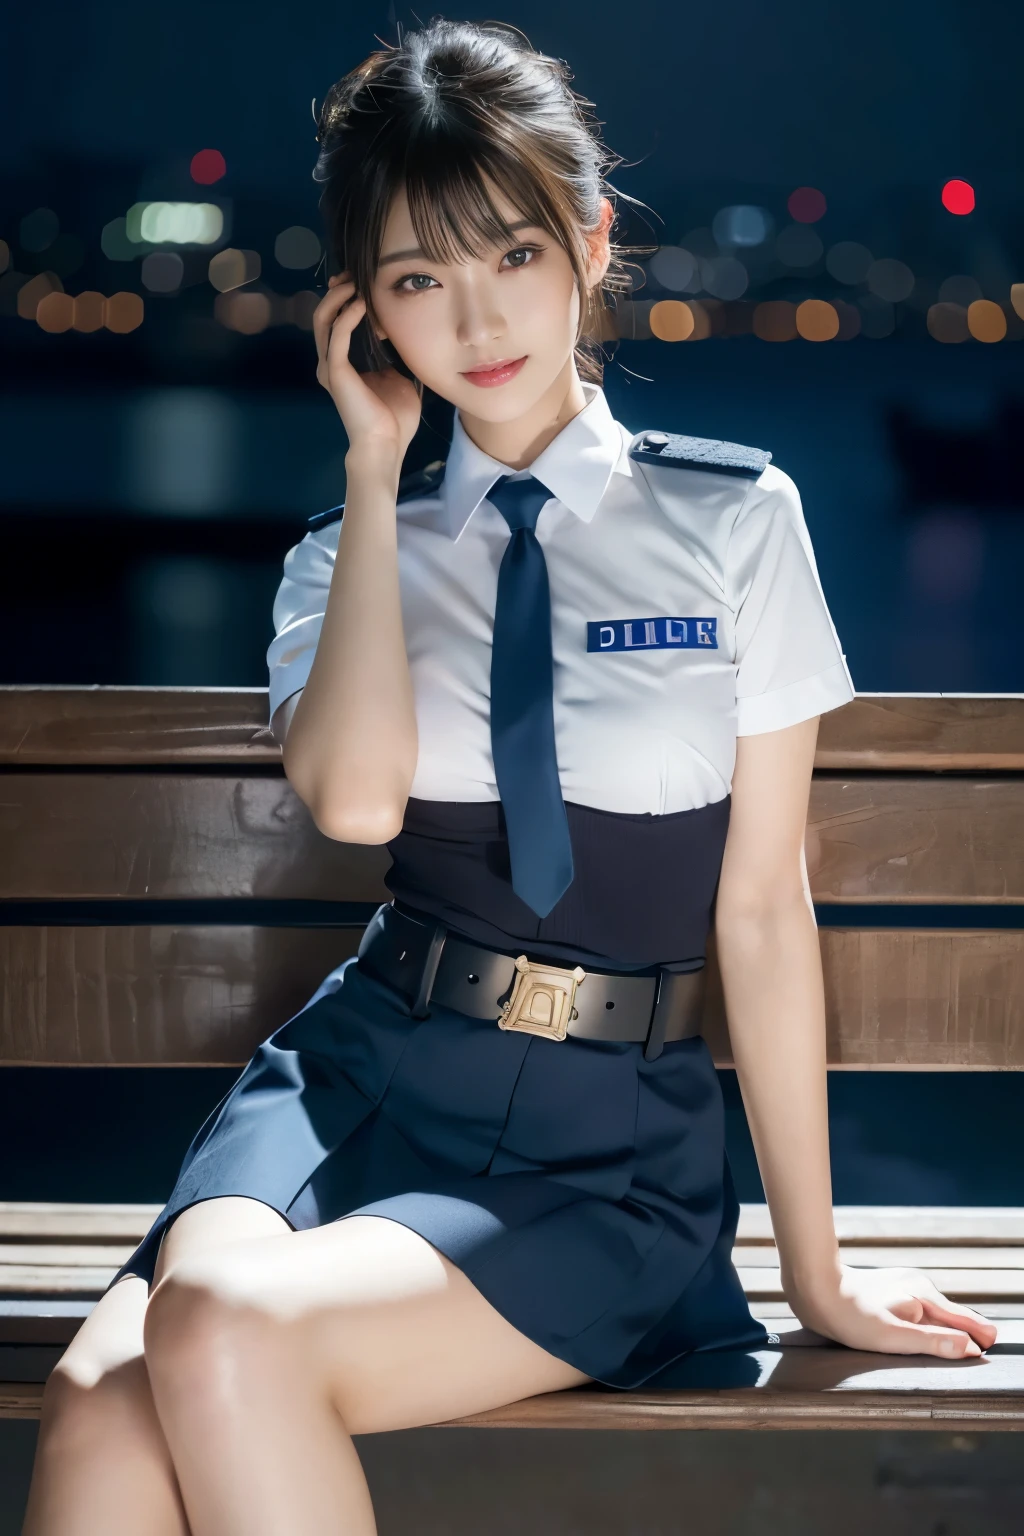 純真な20歳の少女、((日本警察官, セクシーな警察の制服, スカート, キュートでエレガント, ドラマチックなポーズ)),笑顔,夜の街の背景,近道、RAW写真, (8K、最高品質、傑作:1.2)、(複雑な細部:1.4)、(フォトリアリスティック:1.4)、オクタンレンダリング、複雑な3Dレンダリングの超詳細, スタジオソフトライト, リムライト, 鮮やかなディテール, スーパーディテール, リアルな肌の質感, 詳細面, 美しいディテールの目, 非常に詳細な CG Unity 16k 壁紙, 補う, (詳細な背景:1.2), 輝く肌, 全身,手を下げて、足を広げてパンティを見せて,ベンチに座る